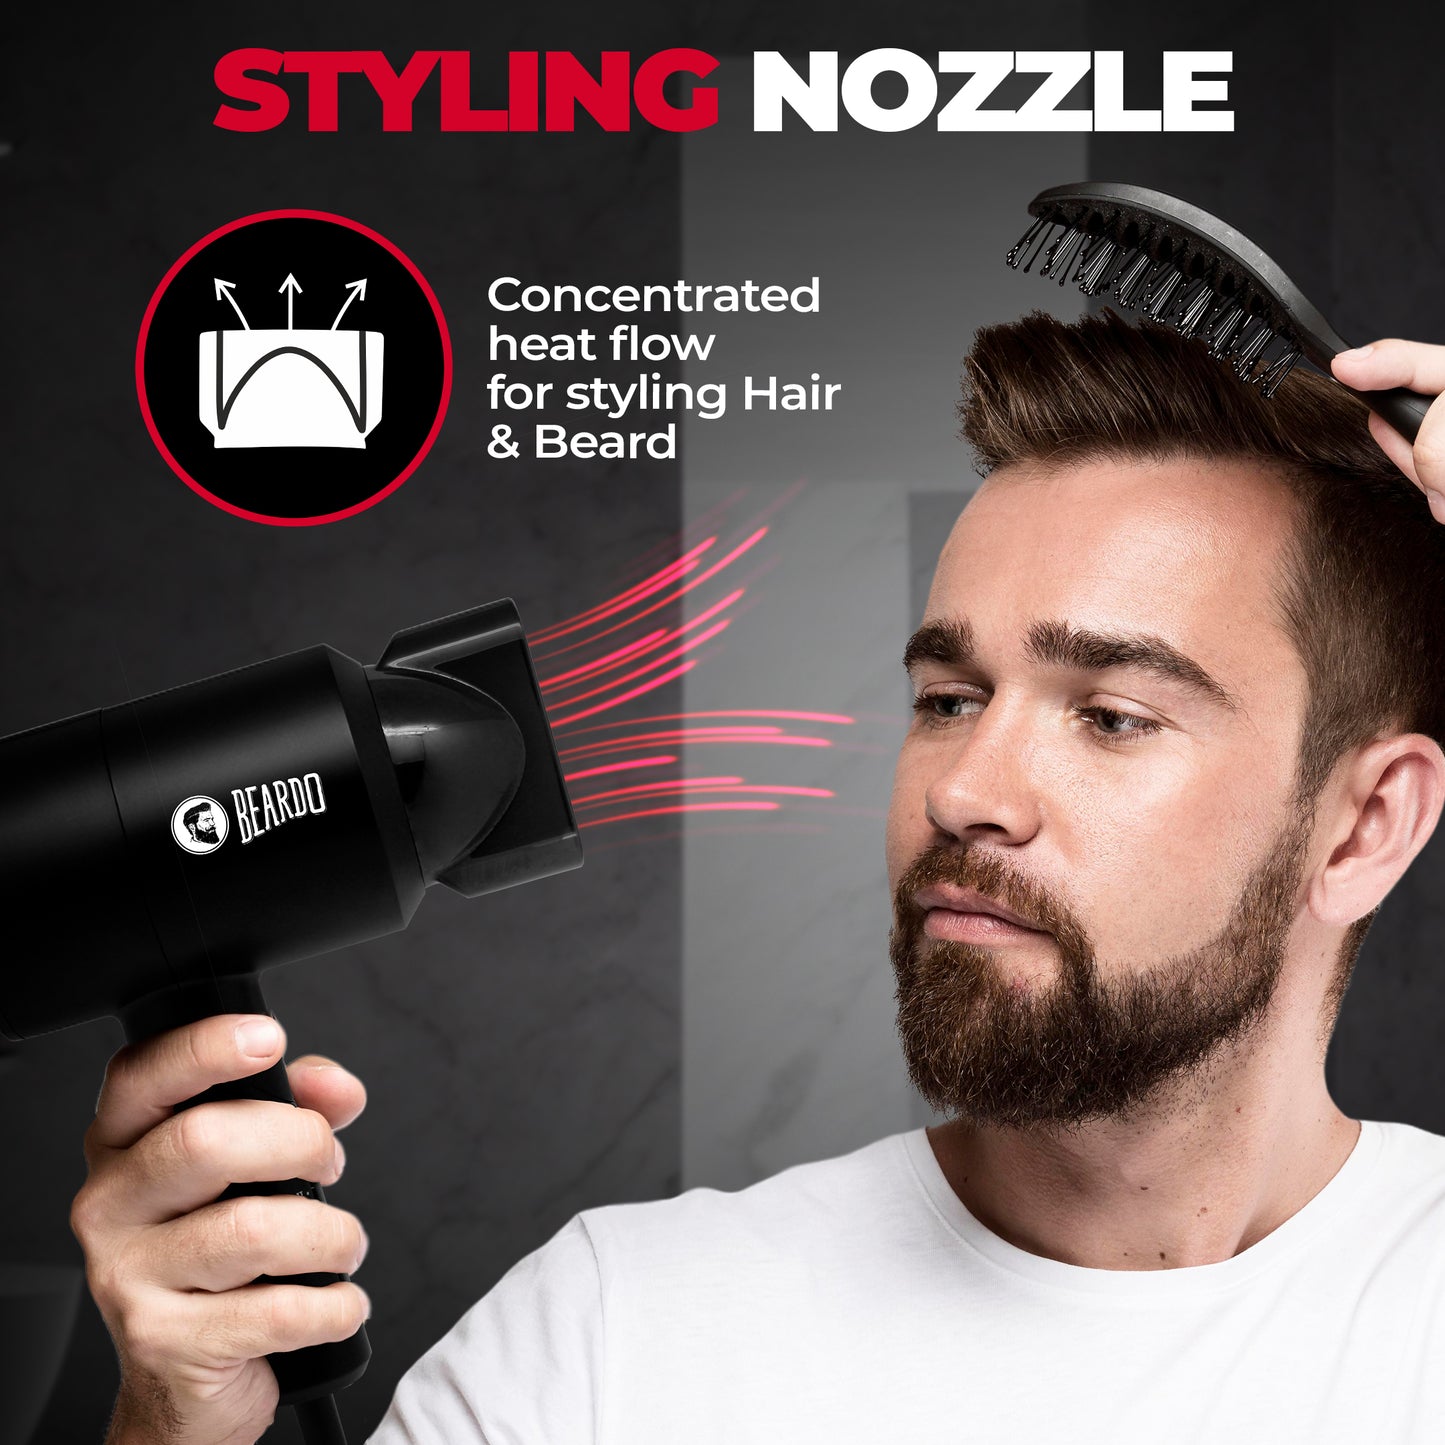 hair styling dryer, men hair style, hair style for men, best hair style for men, professional hair dryer